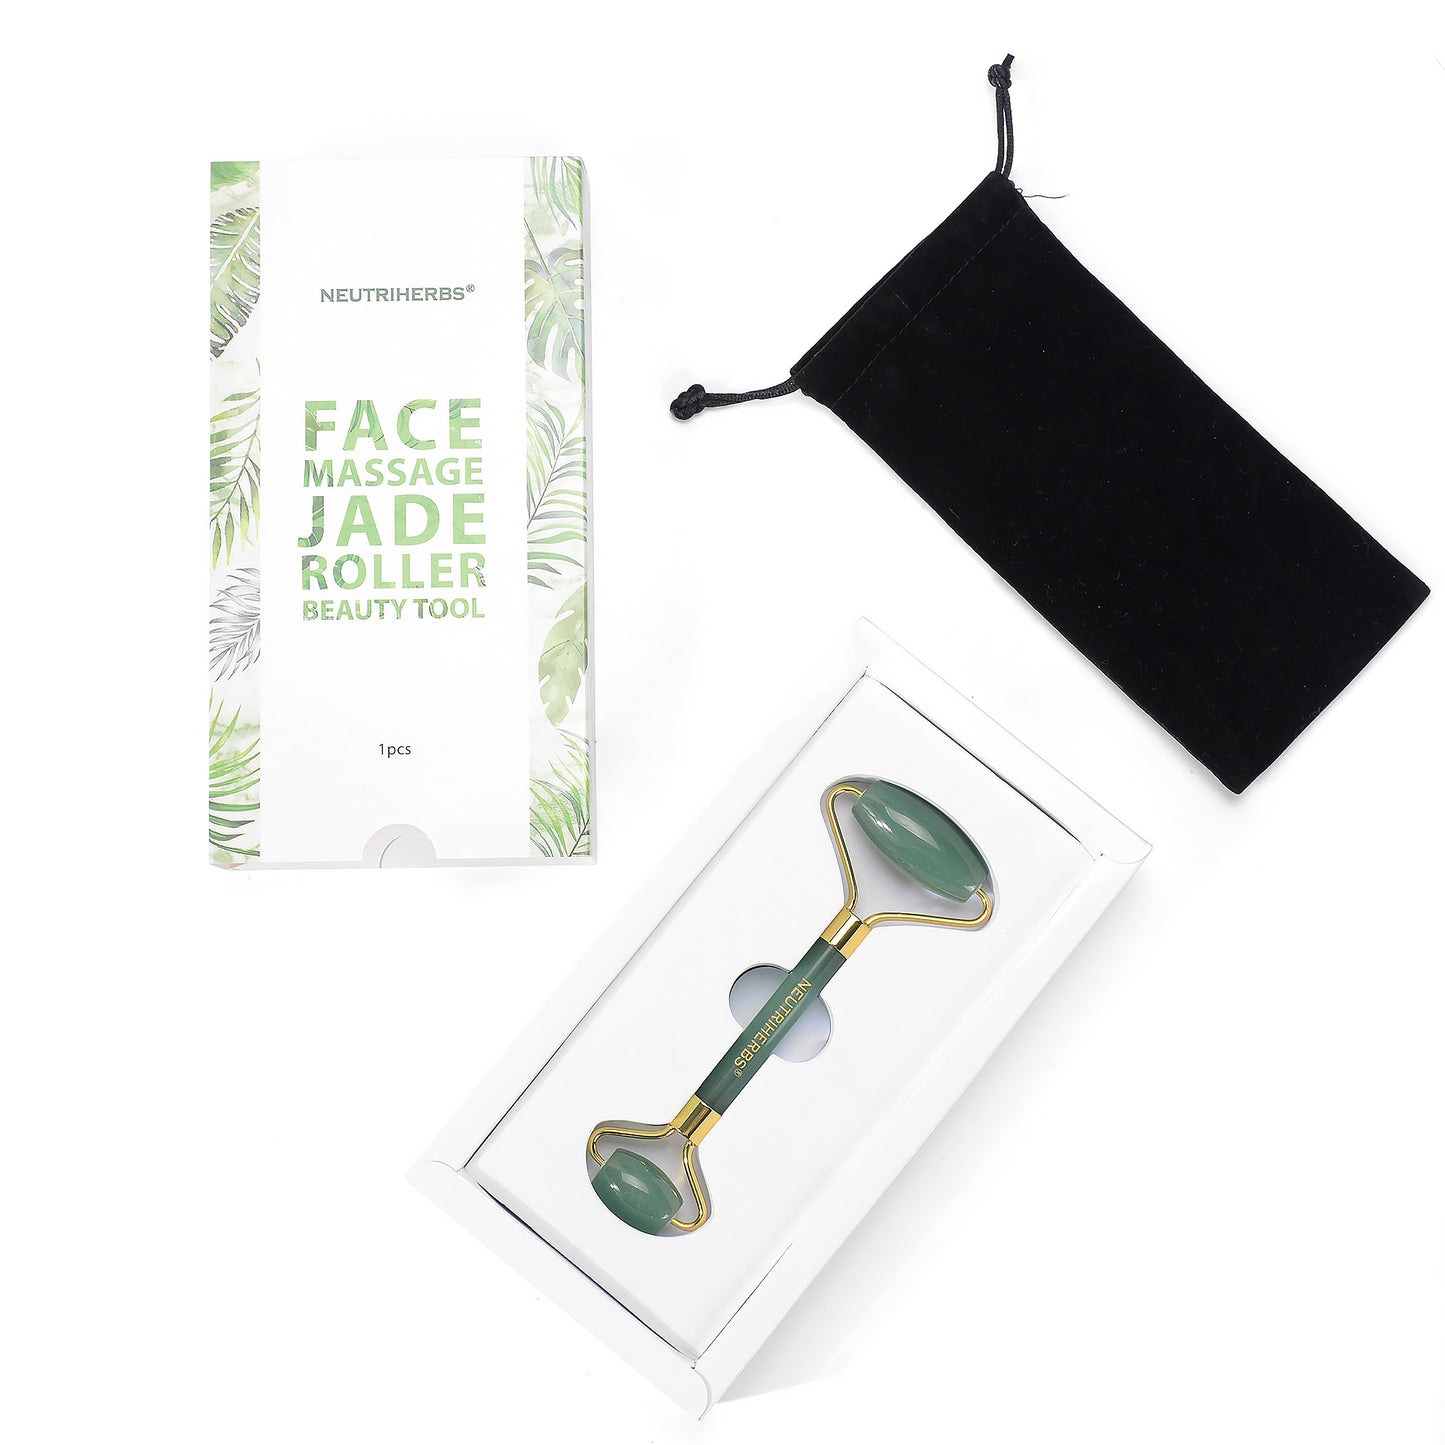 Rouleau de Jade pour massage du visage aux Neutriherbes